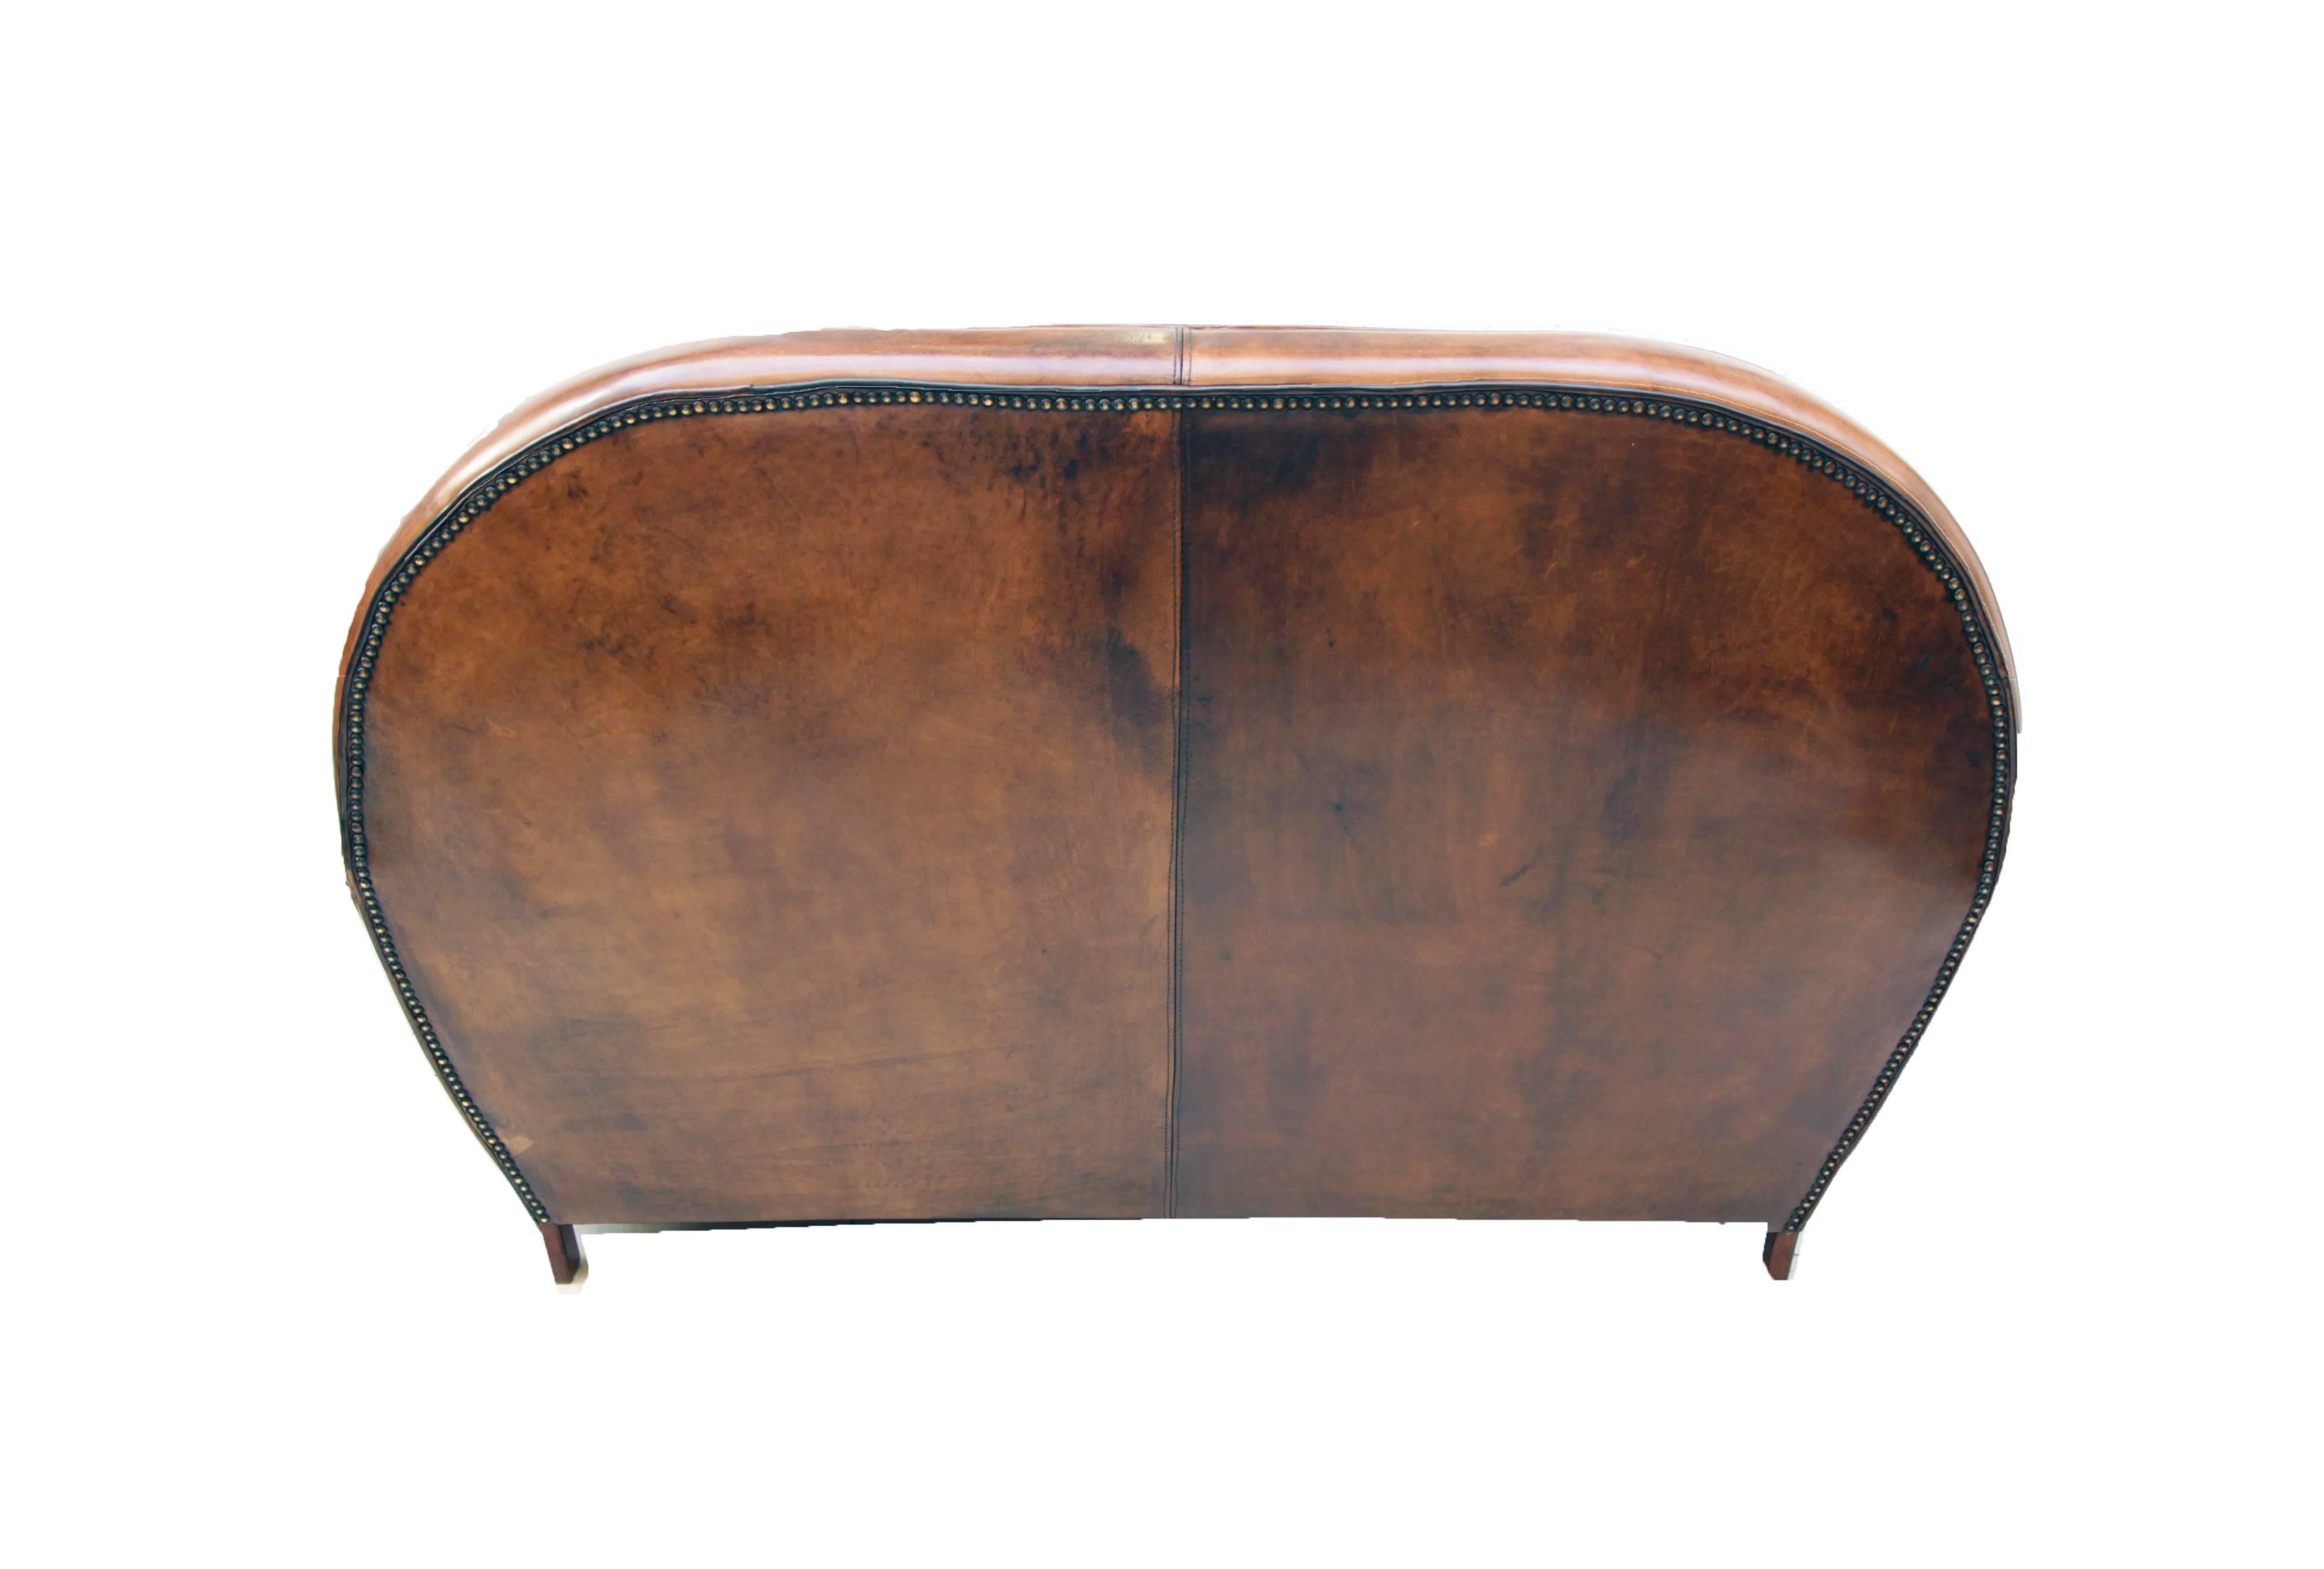 Ce canapé club, est recouvert de cuir de mouton patiné à la main. Le canapé a une très belle forme Art Déco. Le cuir est très solide et l'assise est très confortable. 

 